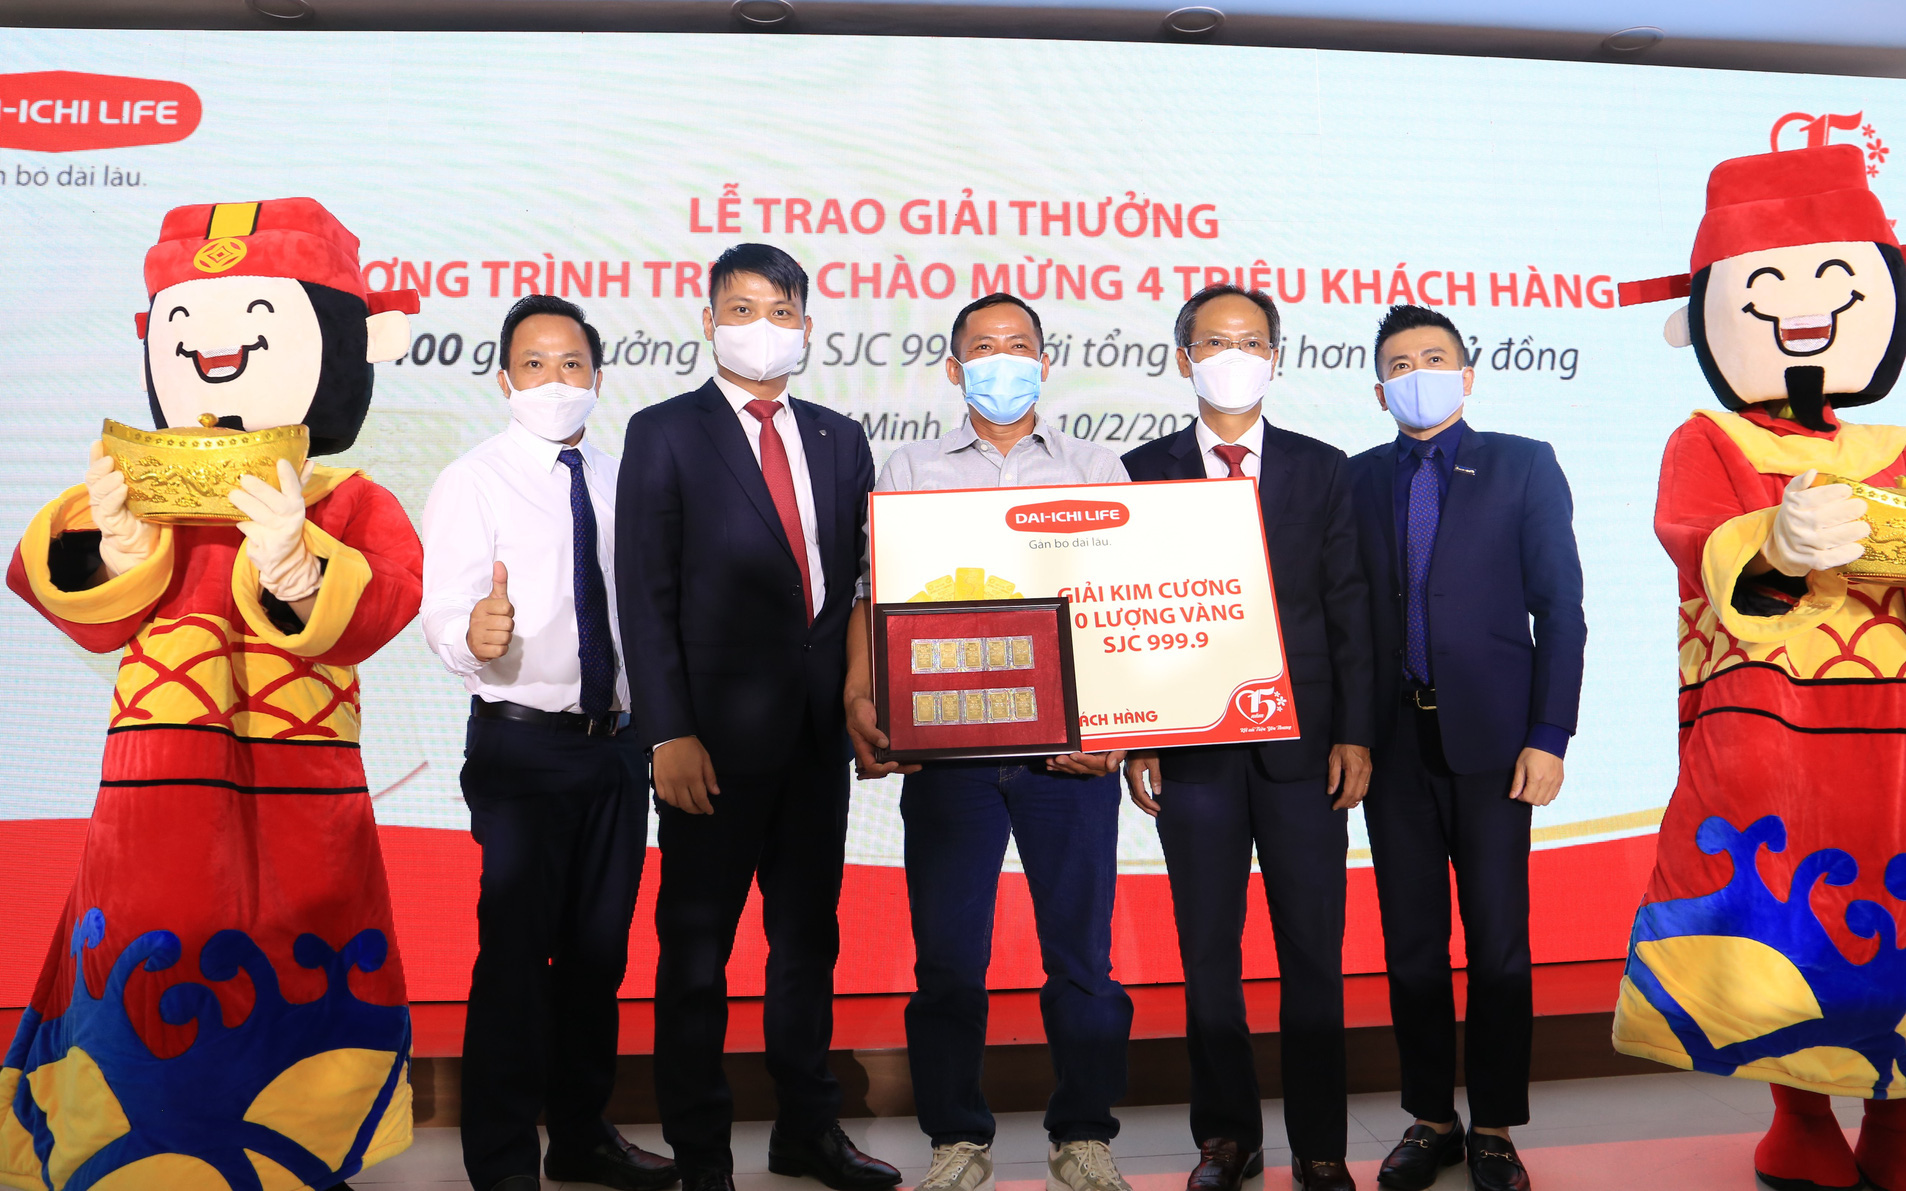 Dai-ichi Life Việt Nam trao giải thưởng chương trình tri ân 4 triệu khách hàng